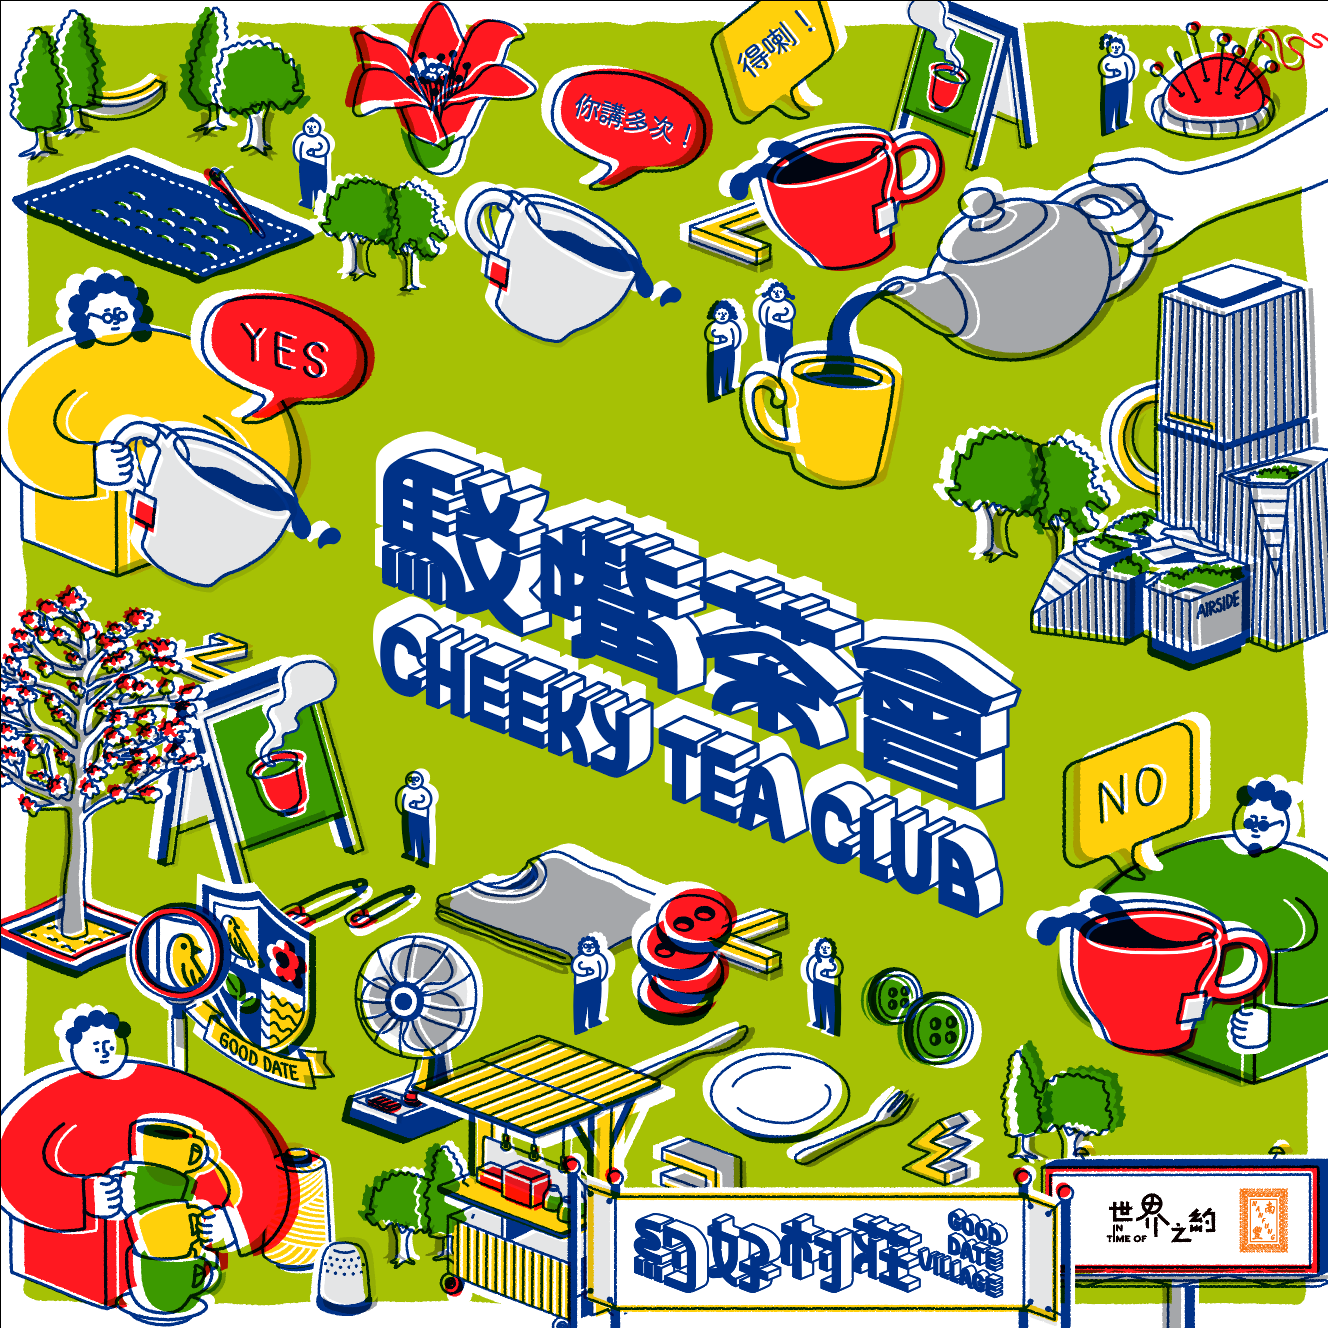 【 Cheeky Tea Club #1 : (No) Regret】